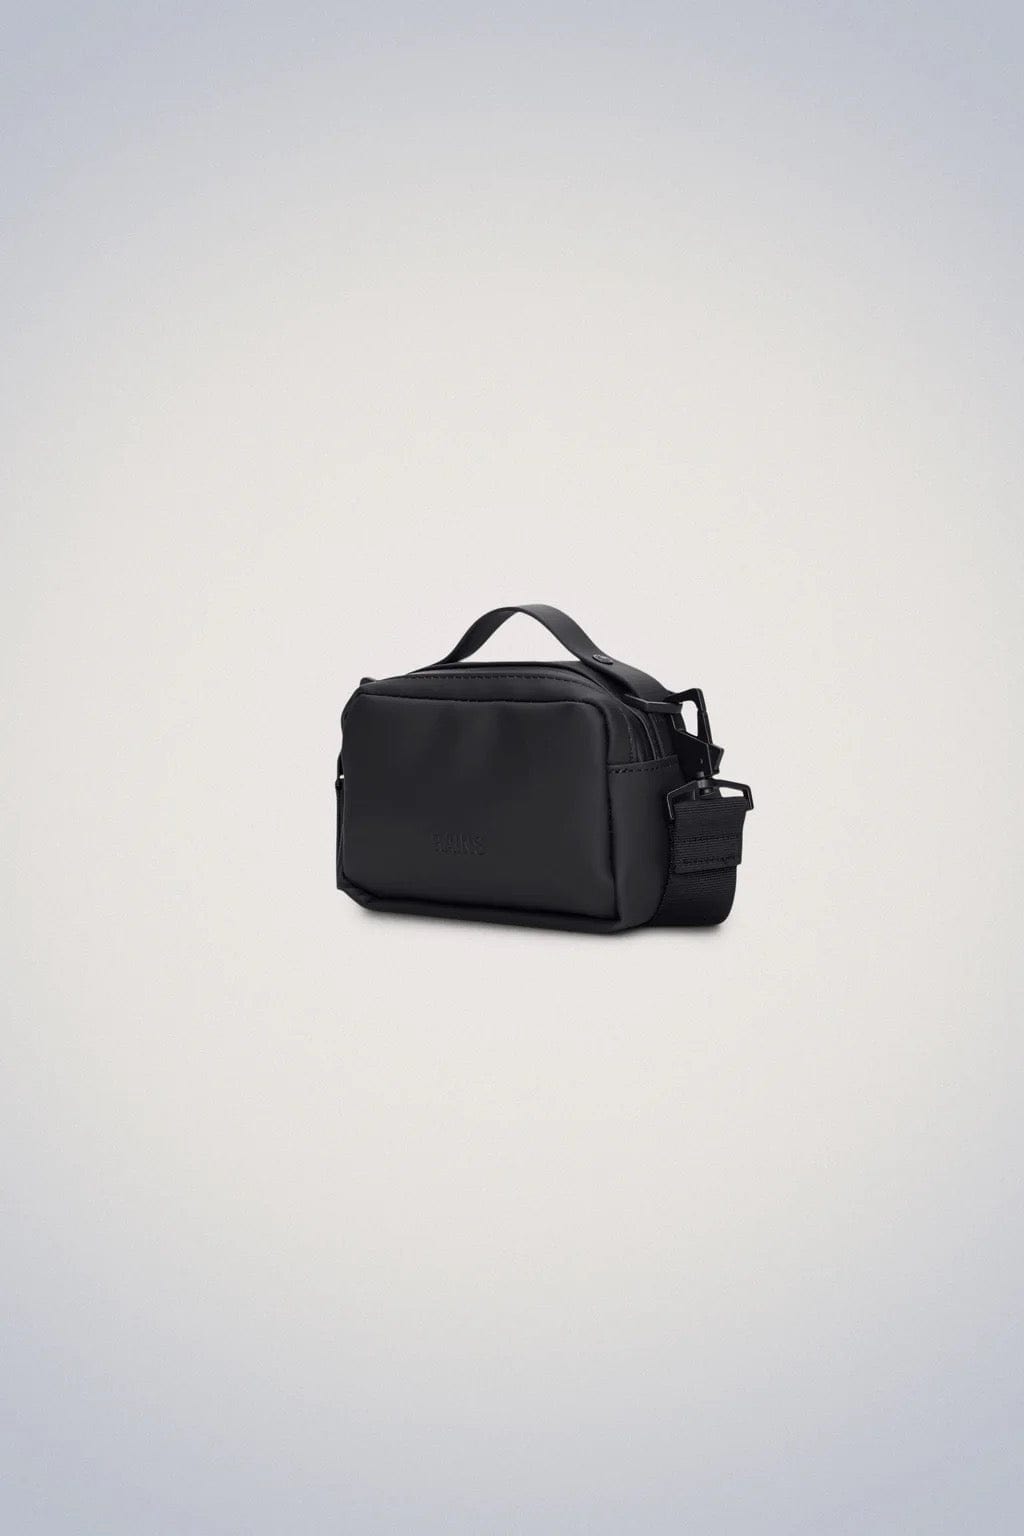 RAINS Handbags H4.3 x W6.3 x D3 inches / Black / Polyester RAINS Box Bag Micro